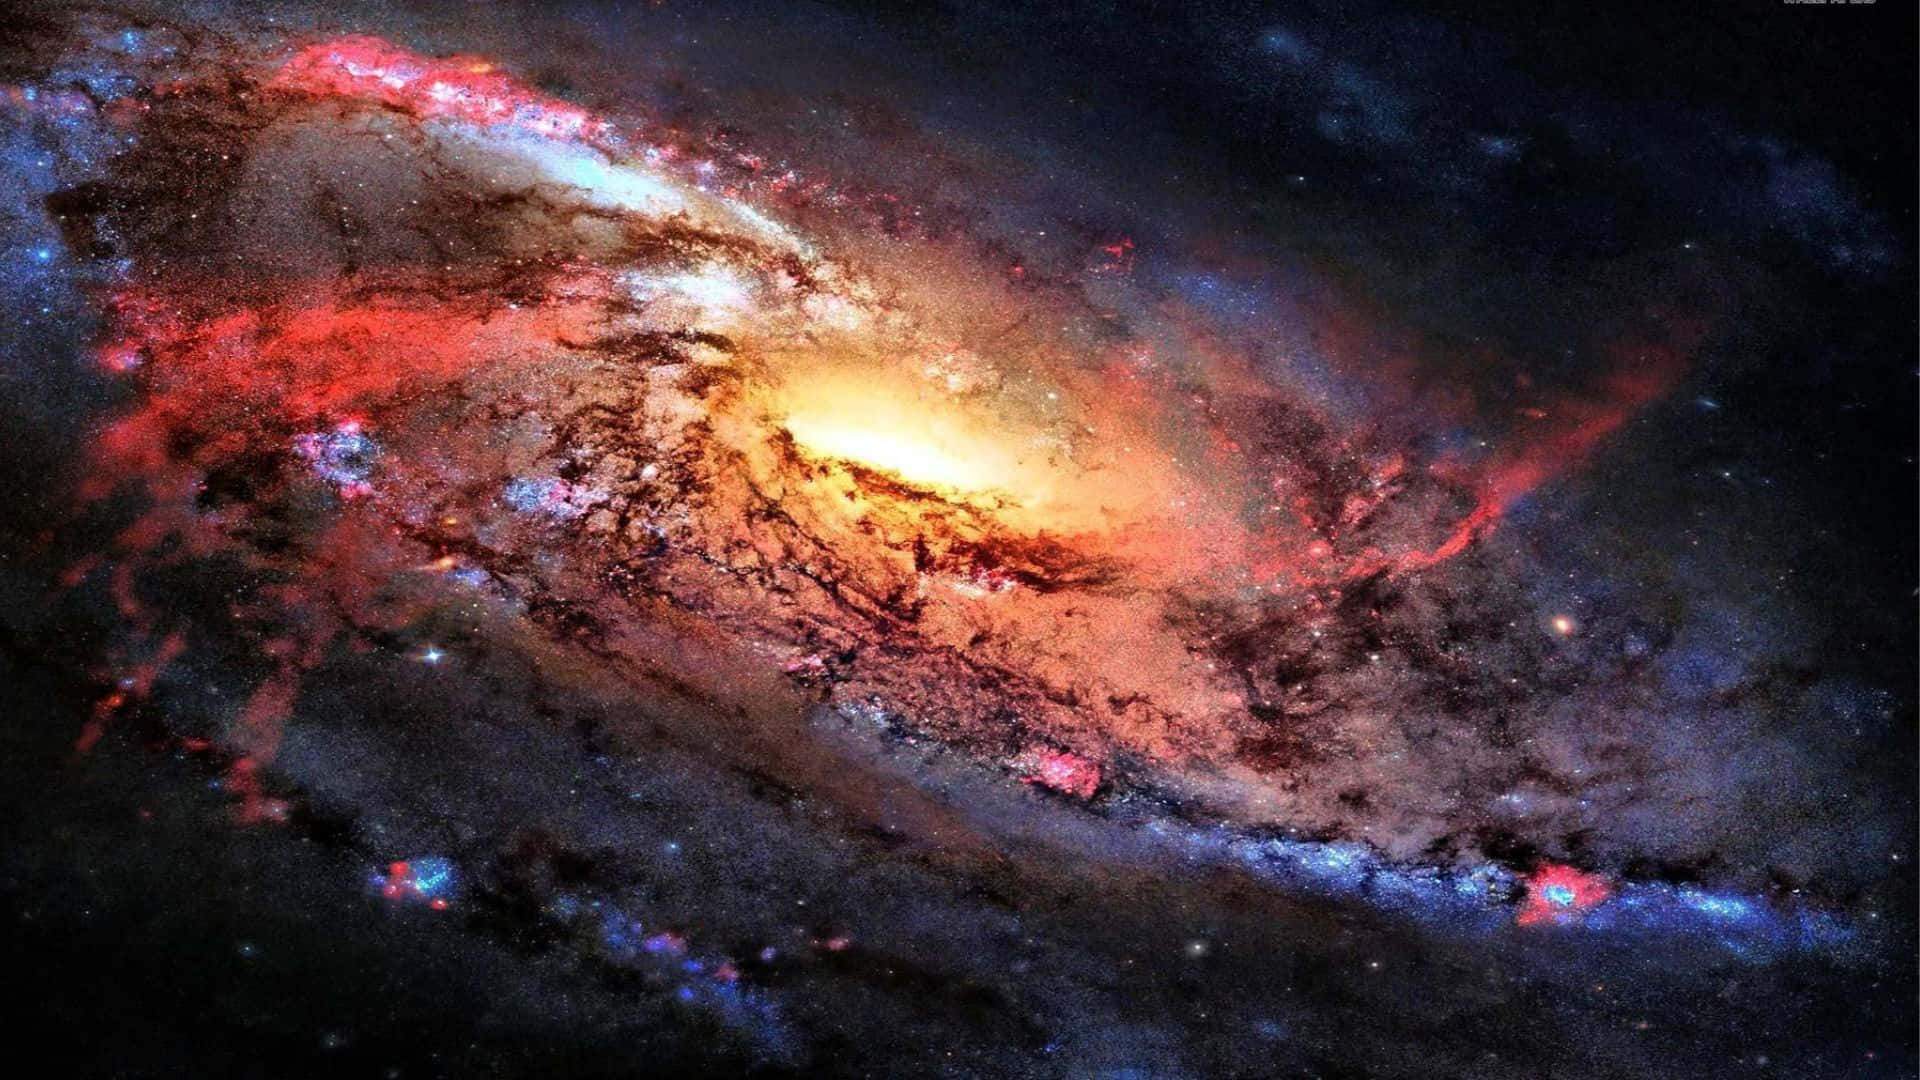 Unavista Impresionante En 3d De Una Galaxia Iluminada En Lo Profundo Del Espacio Exterior. Fondo de pantalla